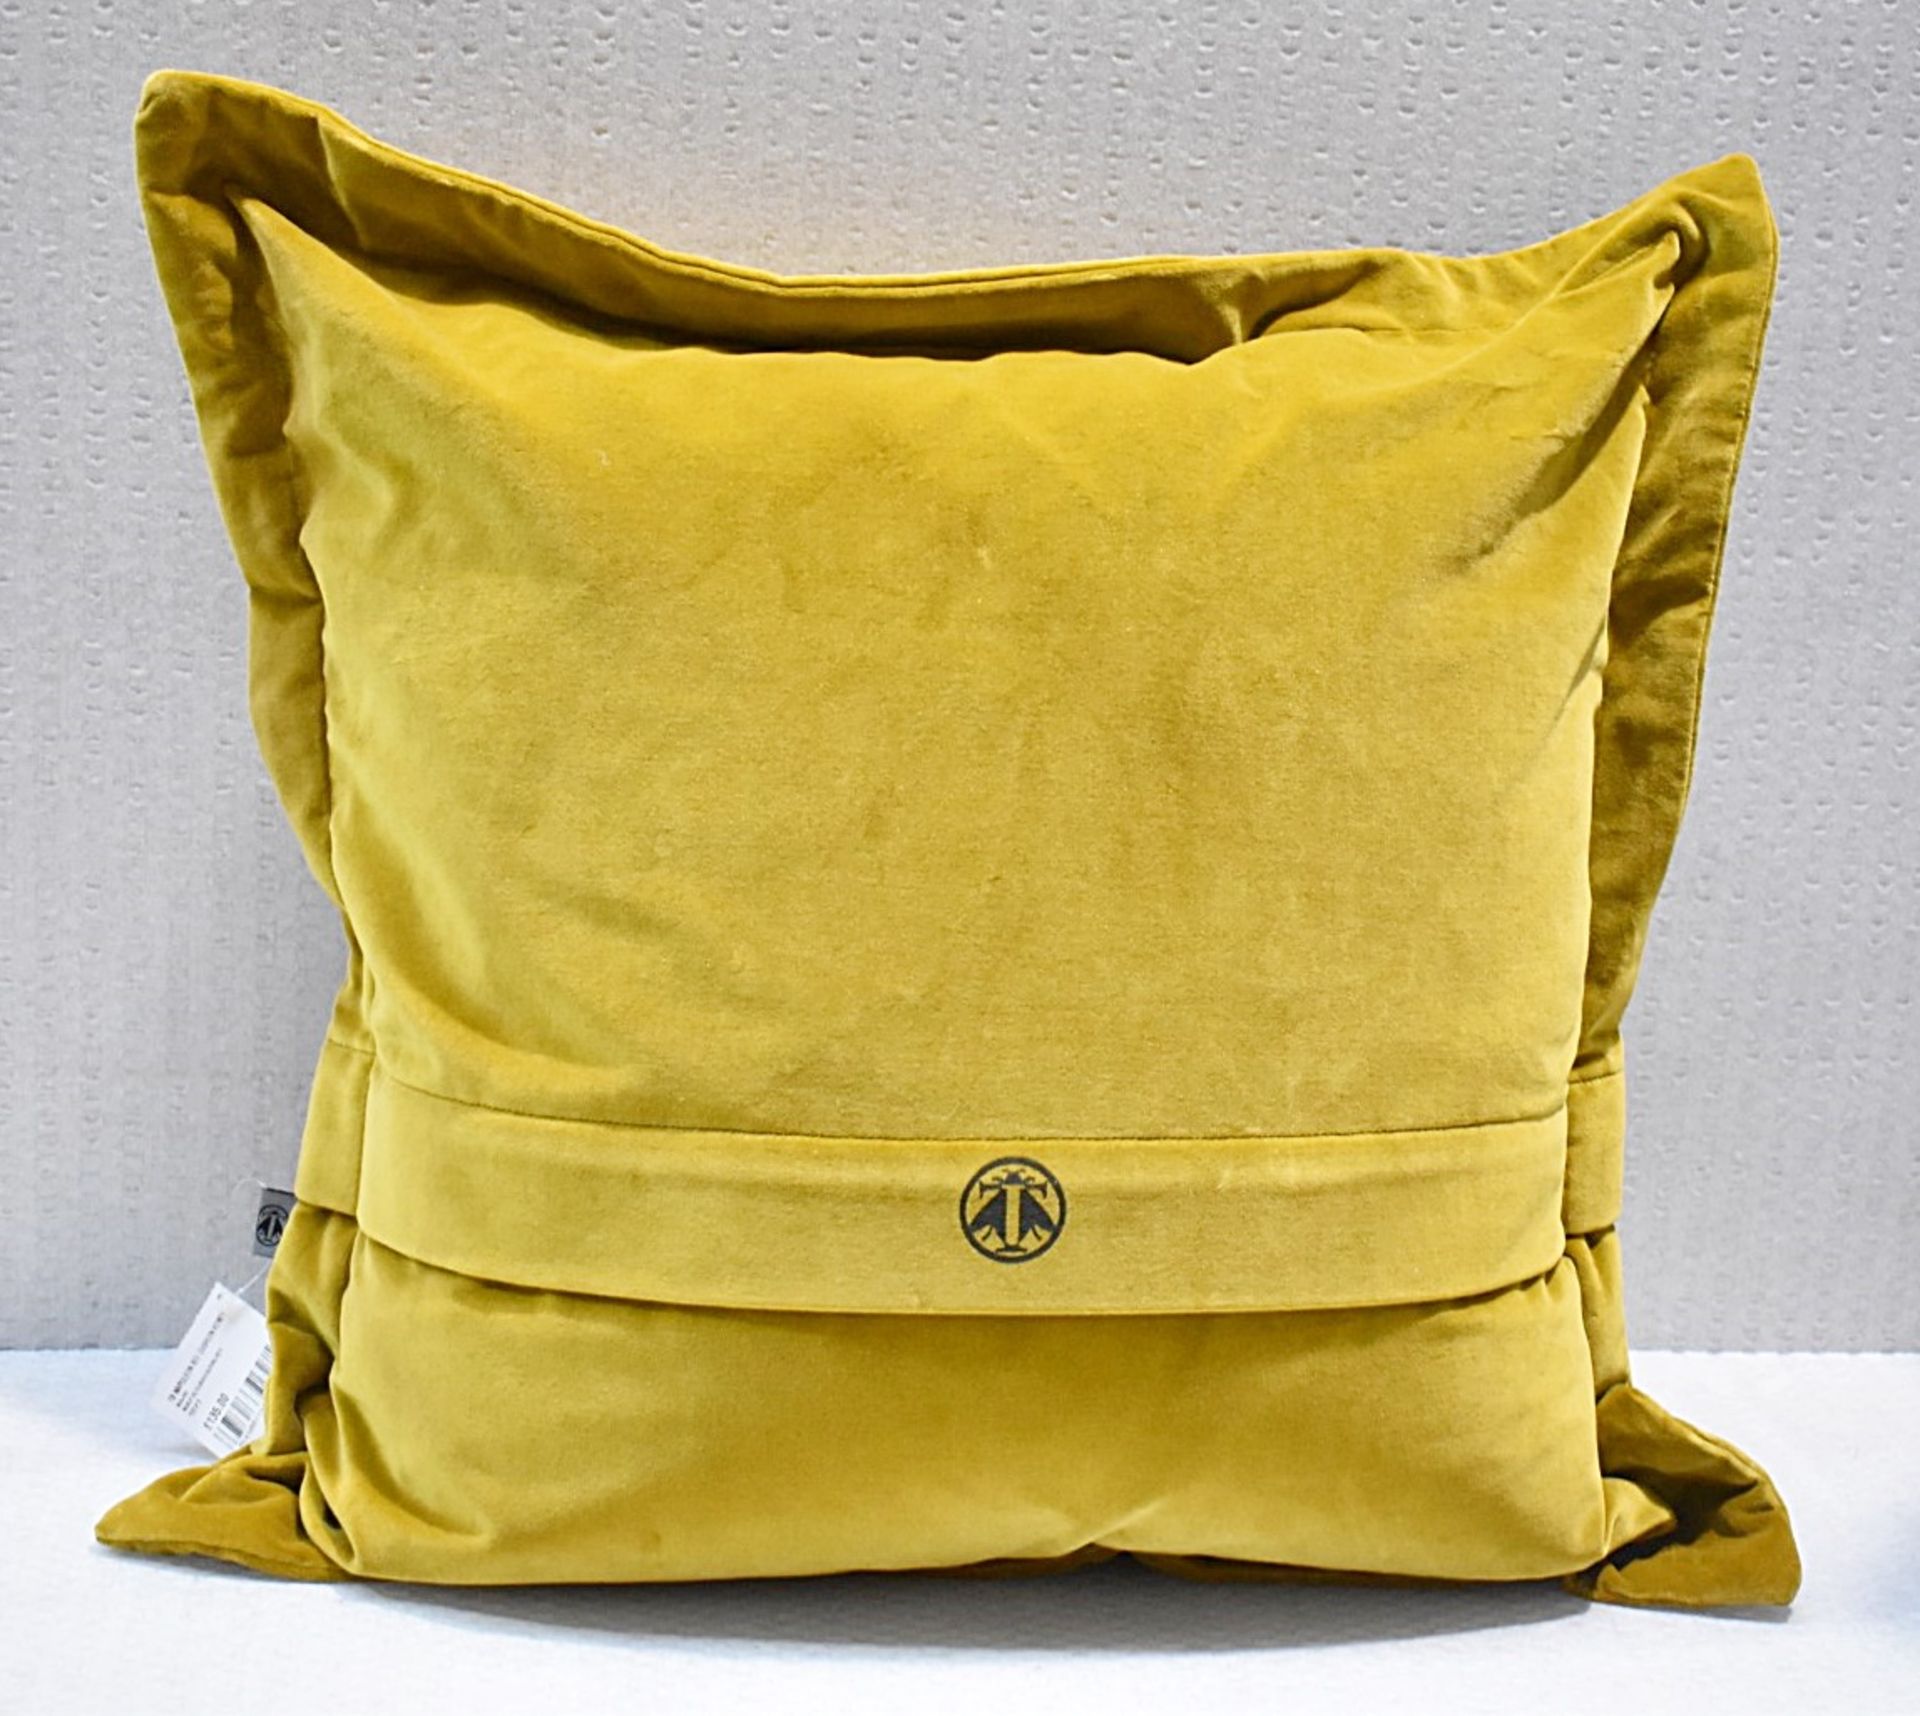 1 x TIMOROUS BEASTIES Napoleon Bee Cushion, in Honey Yellow - Original Price £135.00 - Image 7 of 7